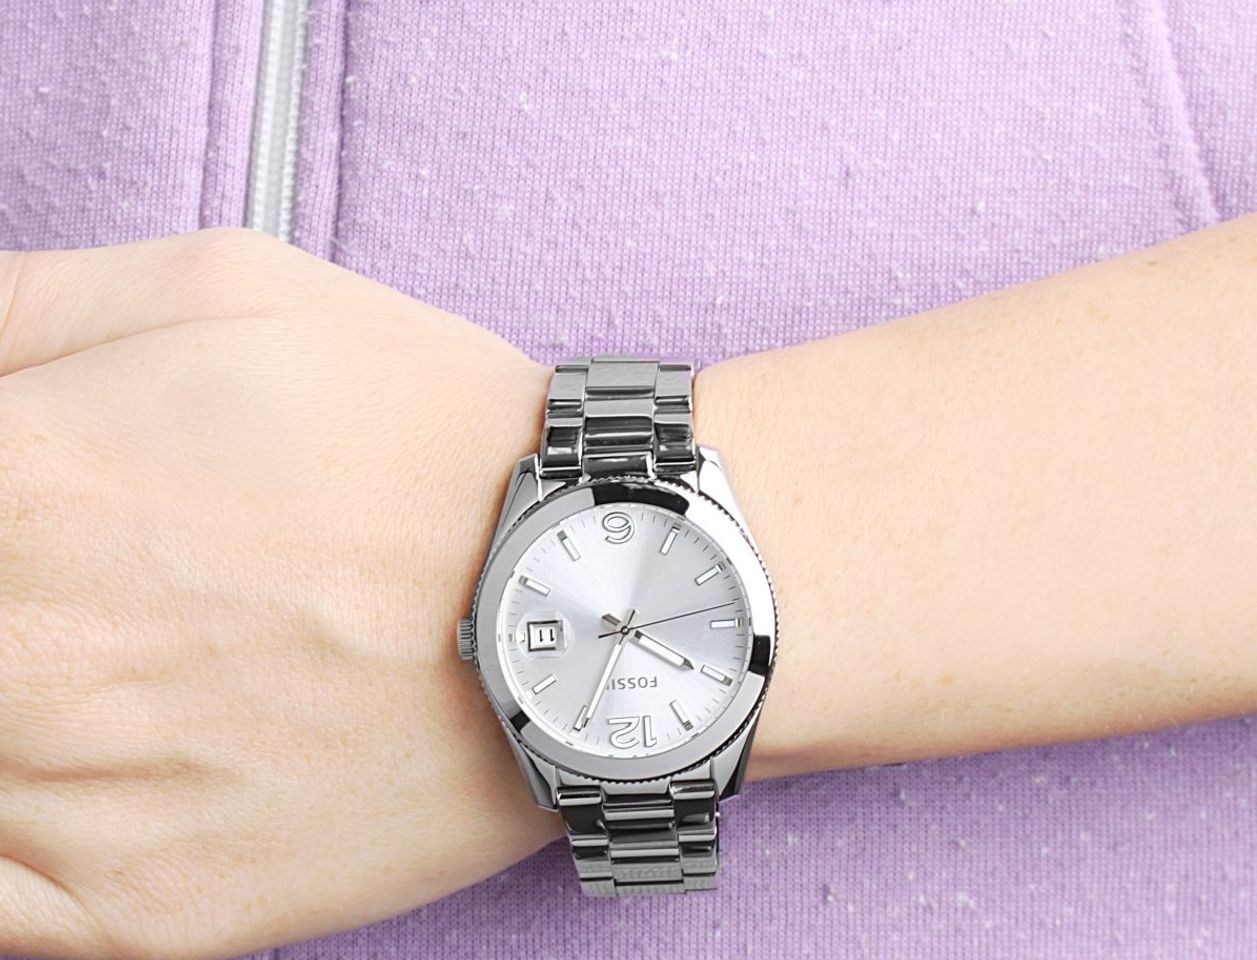 Chiếc đồng hồ Fossil nữ trên tay sang trọng, đẳng cấp